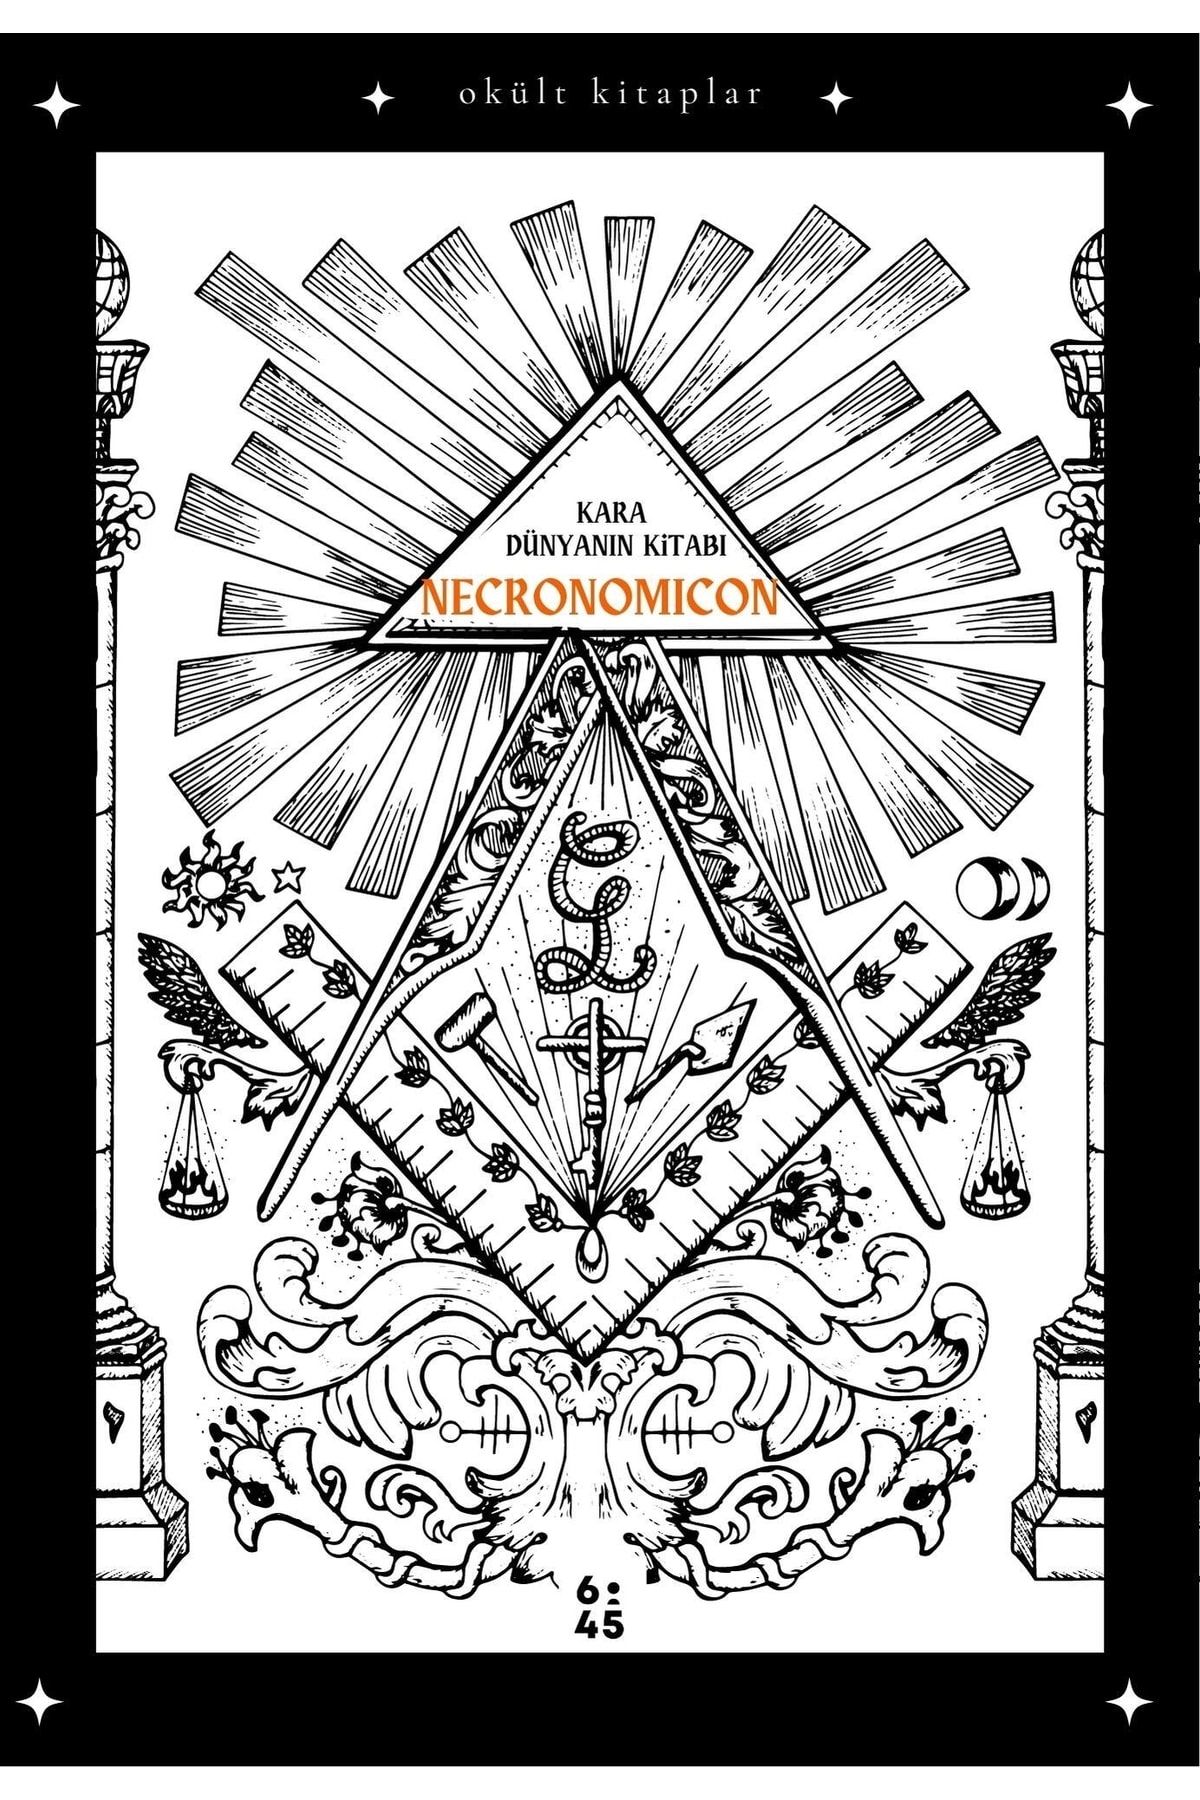 Altıkırkbeş Yayınları Necronomicon & Kara Dünyanın Kitabı